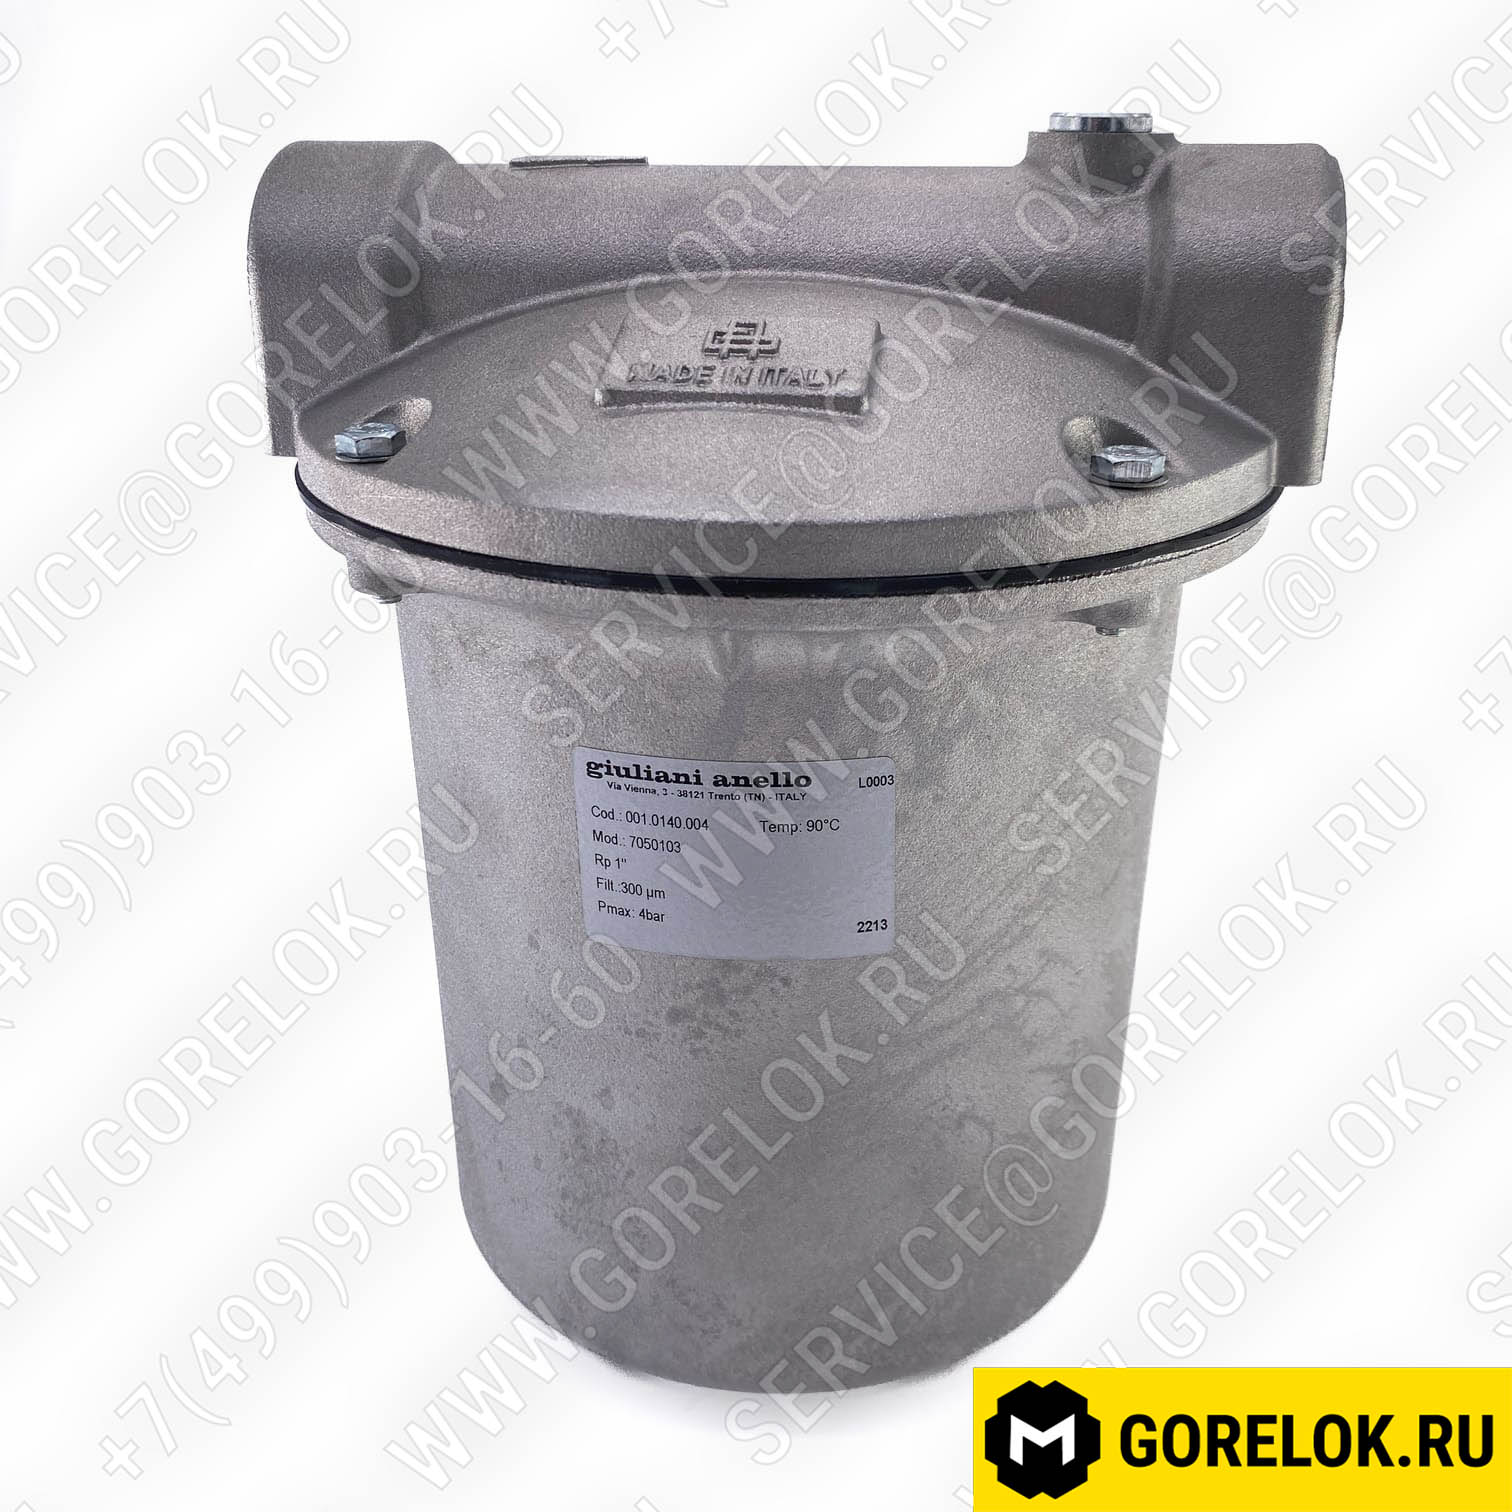 Жидкотопливный фильтр Ecoflam 70501/03 арт.65324103 цена, купить